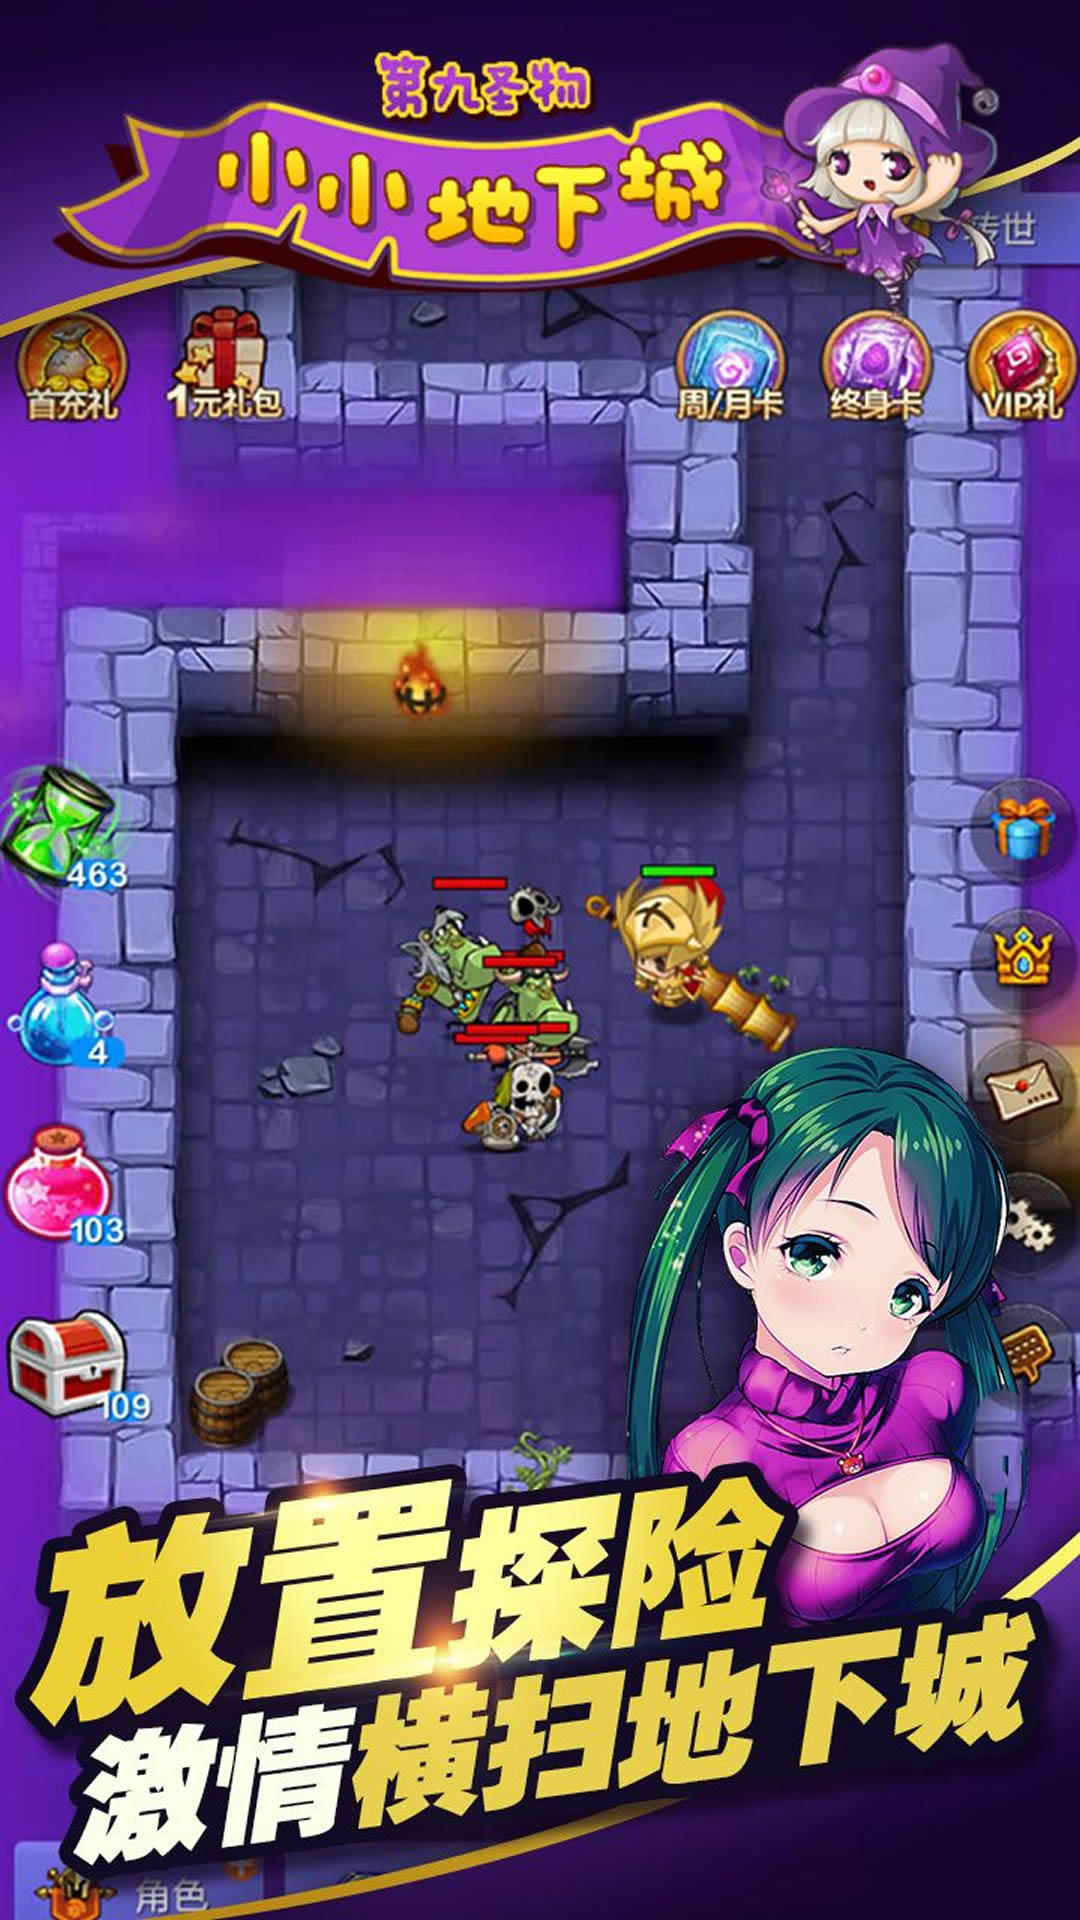 Screenshot 1 of little dungeon 